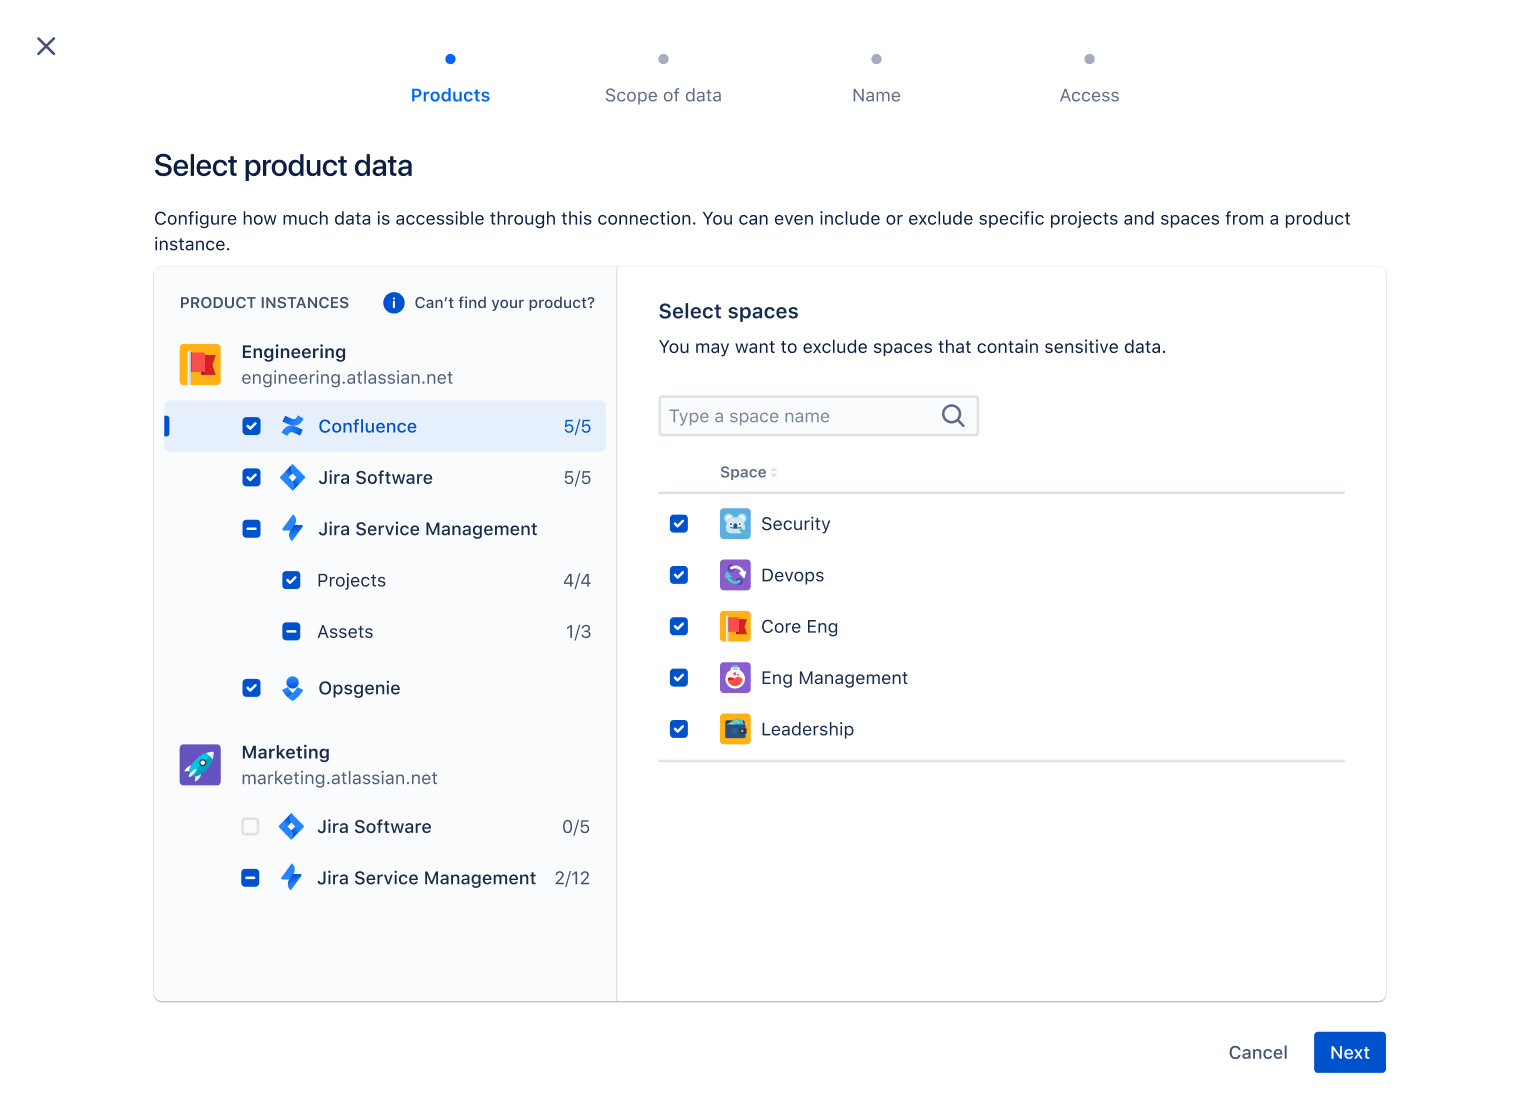 Un écran de sélection de données produit montre comment sélectionner les données de mesure des produits Atlassian éligibles.